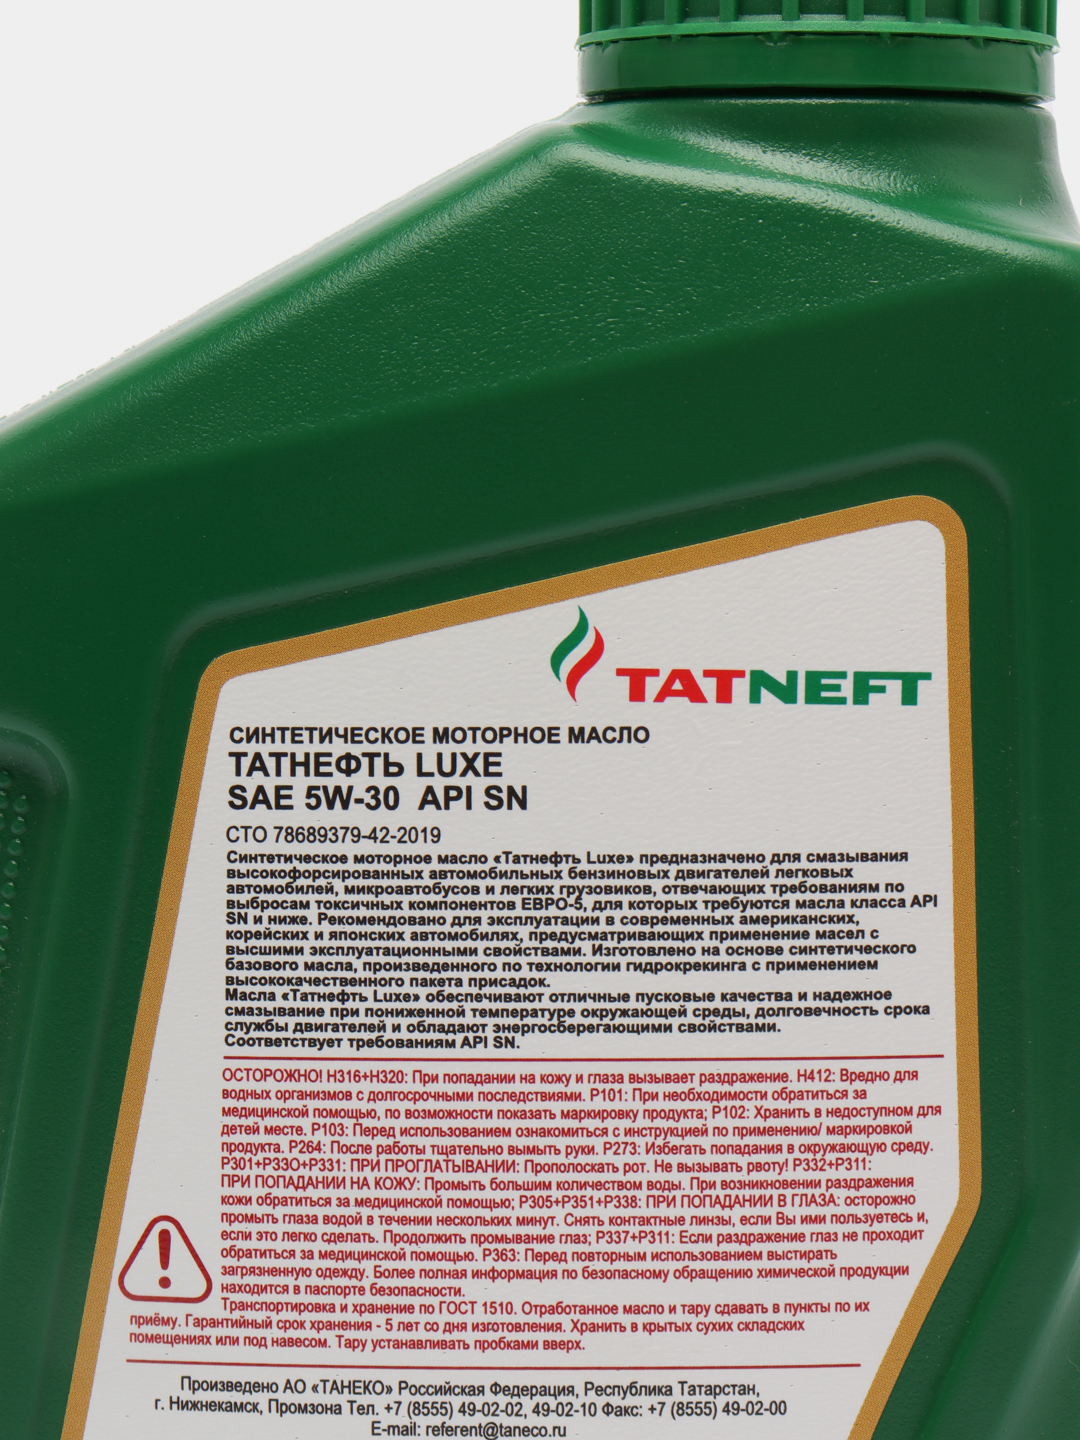 Масло TATNEFT Luxe 5w30. Татнефть Luxe 5w-30. Моторное масло TATNEFT Luxe Pao 5w-30 синтетическое. Татнефть Luxe 5w-30 артикул. Синтетические масла татнефть